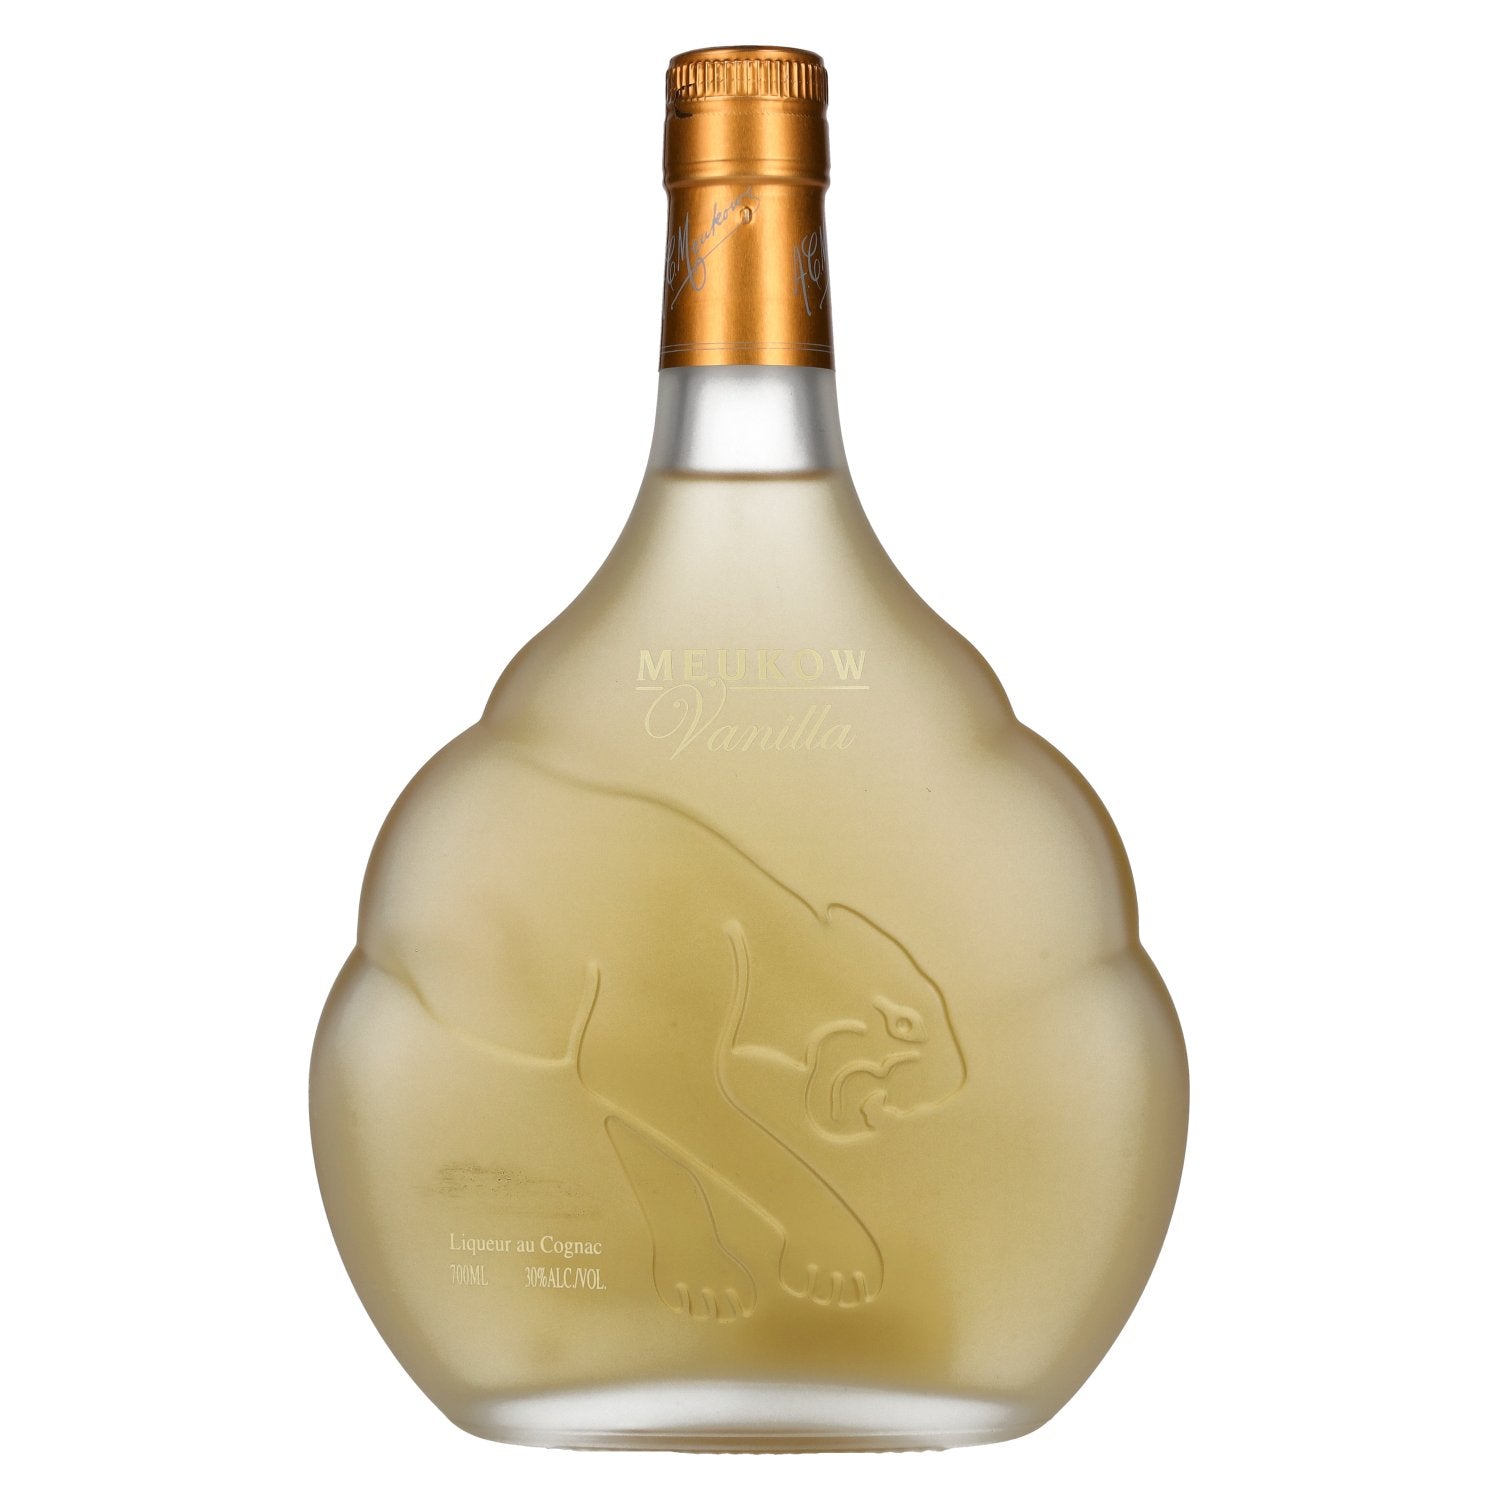 Meukow Vanilla Liqueur au Cognac 30% Vol. 0,7l